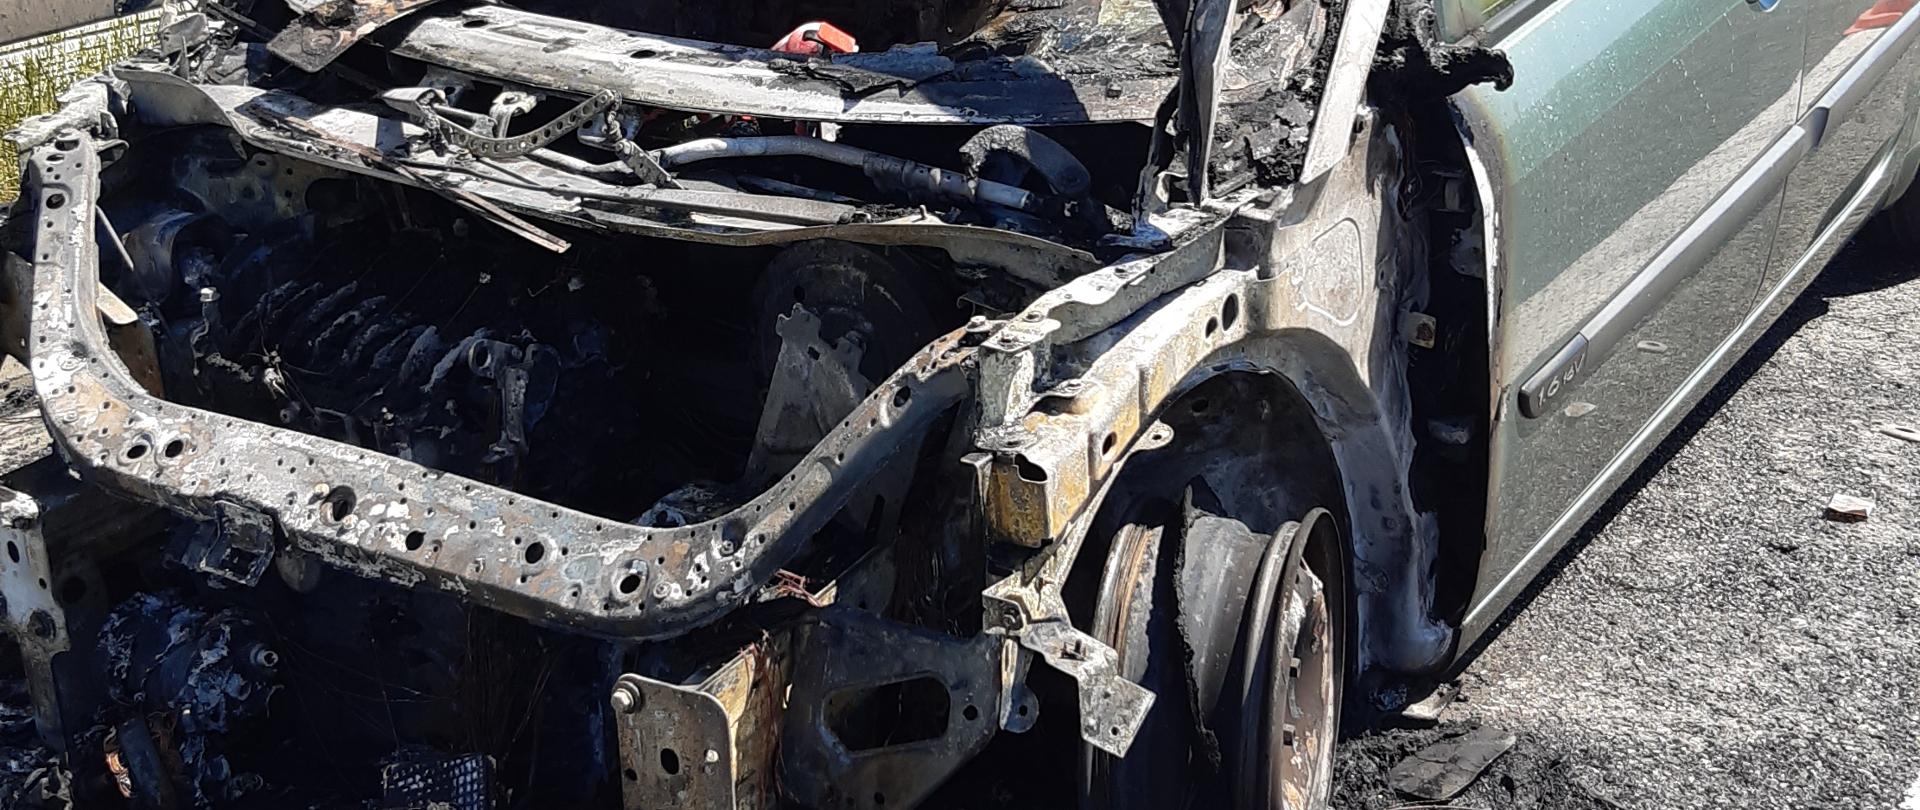 Na zdjęciu widoczny samochód osobowy ze spaloną komorą silnika. Komora silnika całkowicie spalona.